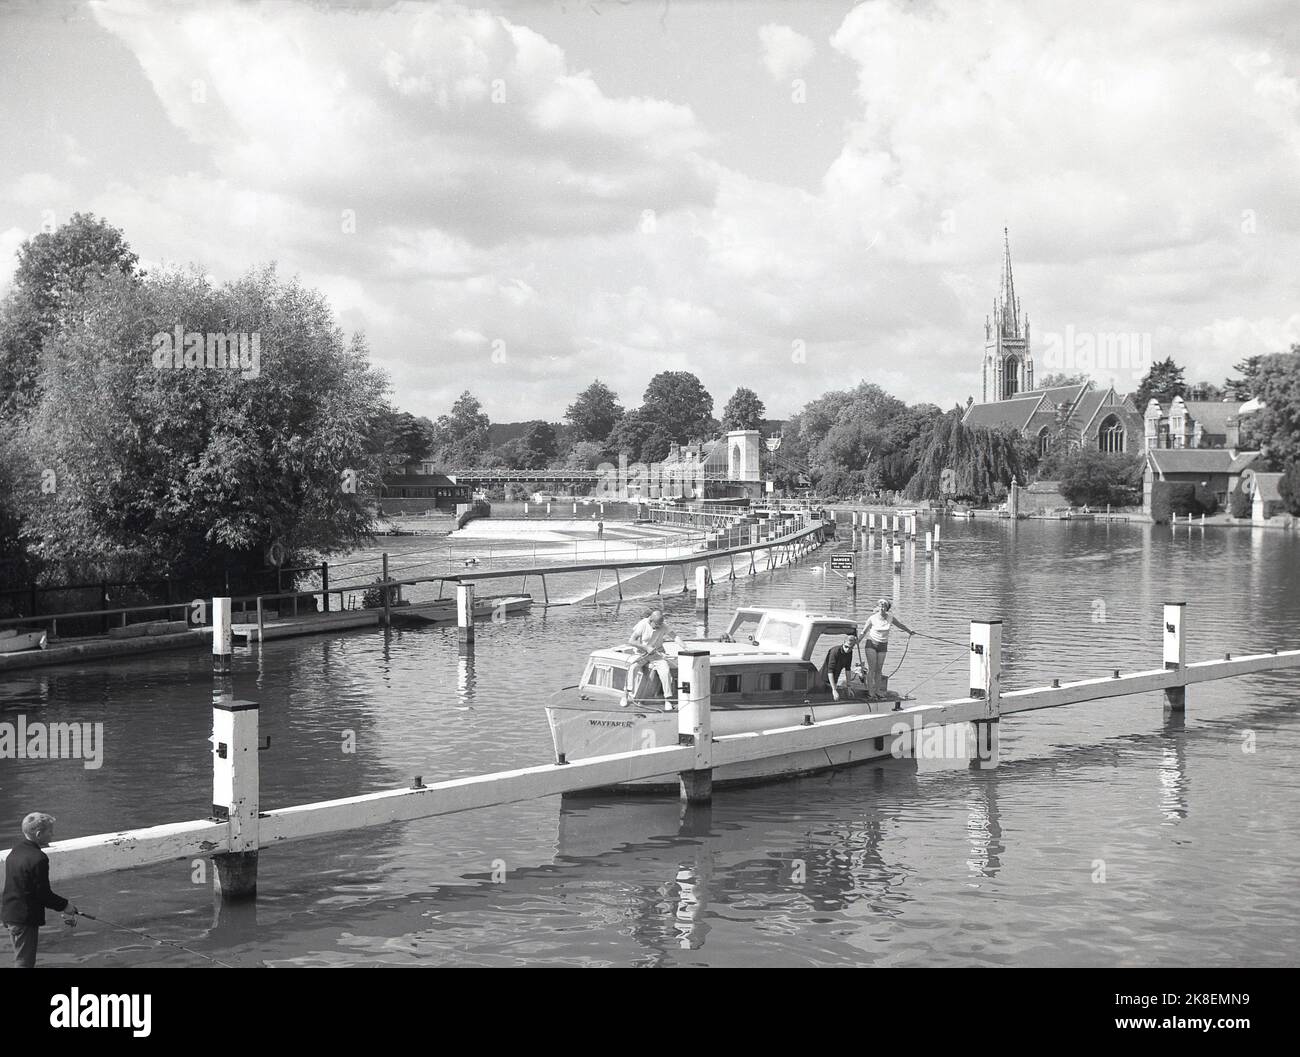 1966, historisch, Blick aus dieser Ära eines Vergnügungsbootes, das auf der Themse in Marlow, Bekshire, England, Großbritannien, festgemacht wurde. In der Ferne sieht man auf dem Bild die Hängebrücke über das Wehr und den Turm der All-Saint-Kirche. Stockfoto